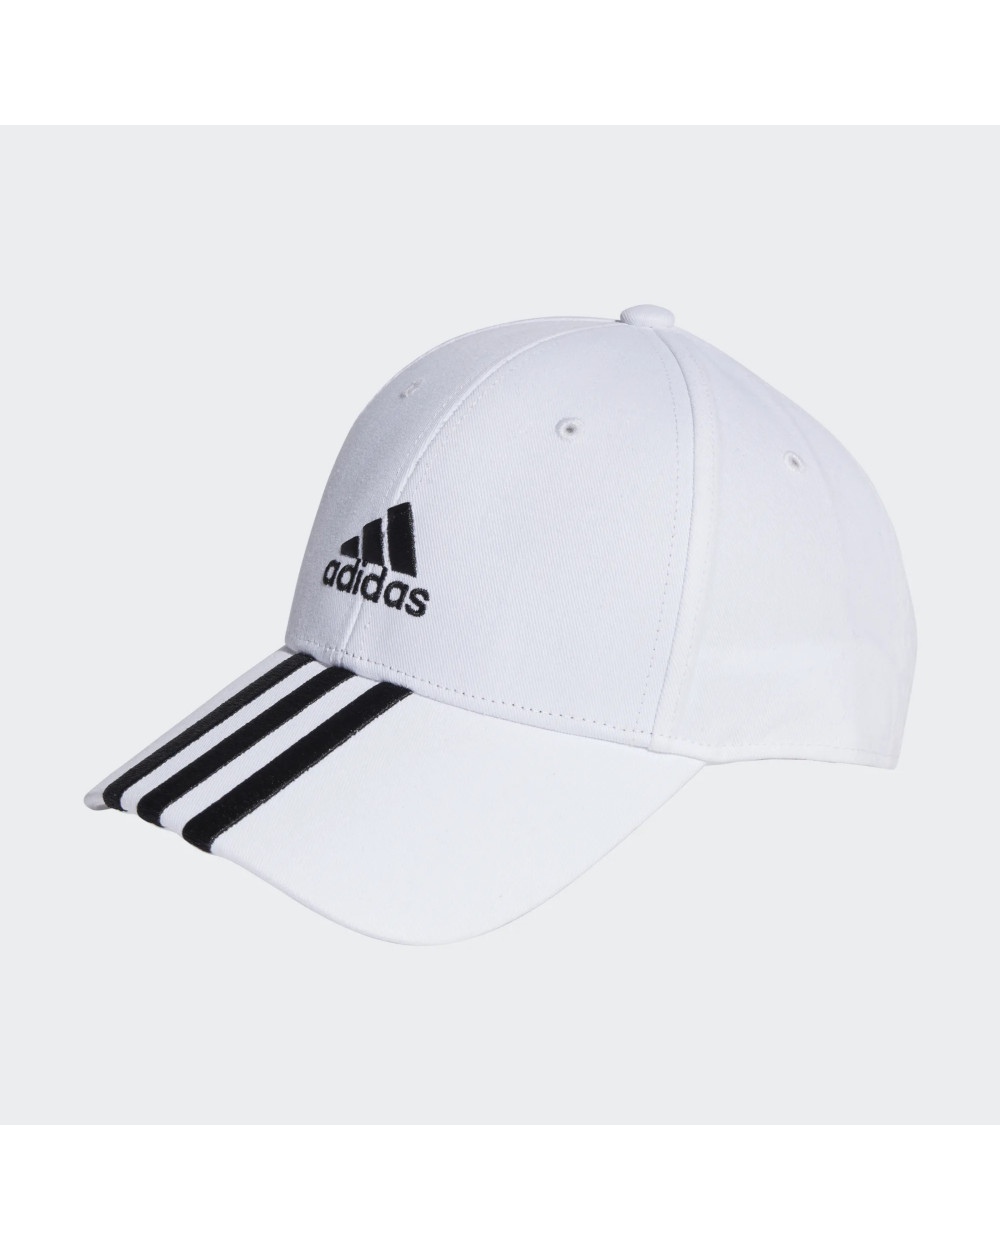  Adidas Cappello Berretto Bianco Cotone 3 stripes Baseball Sportswear lifestyle